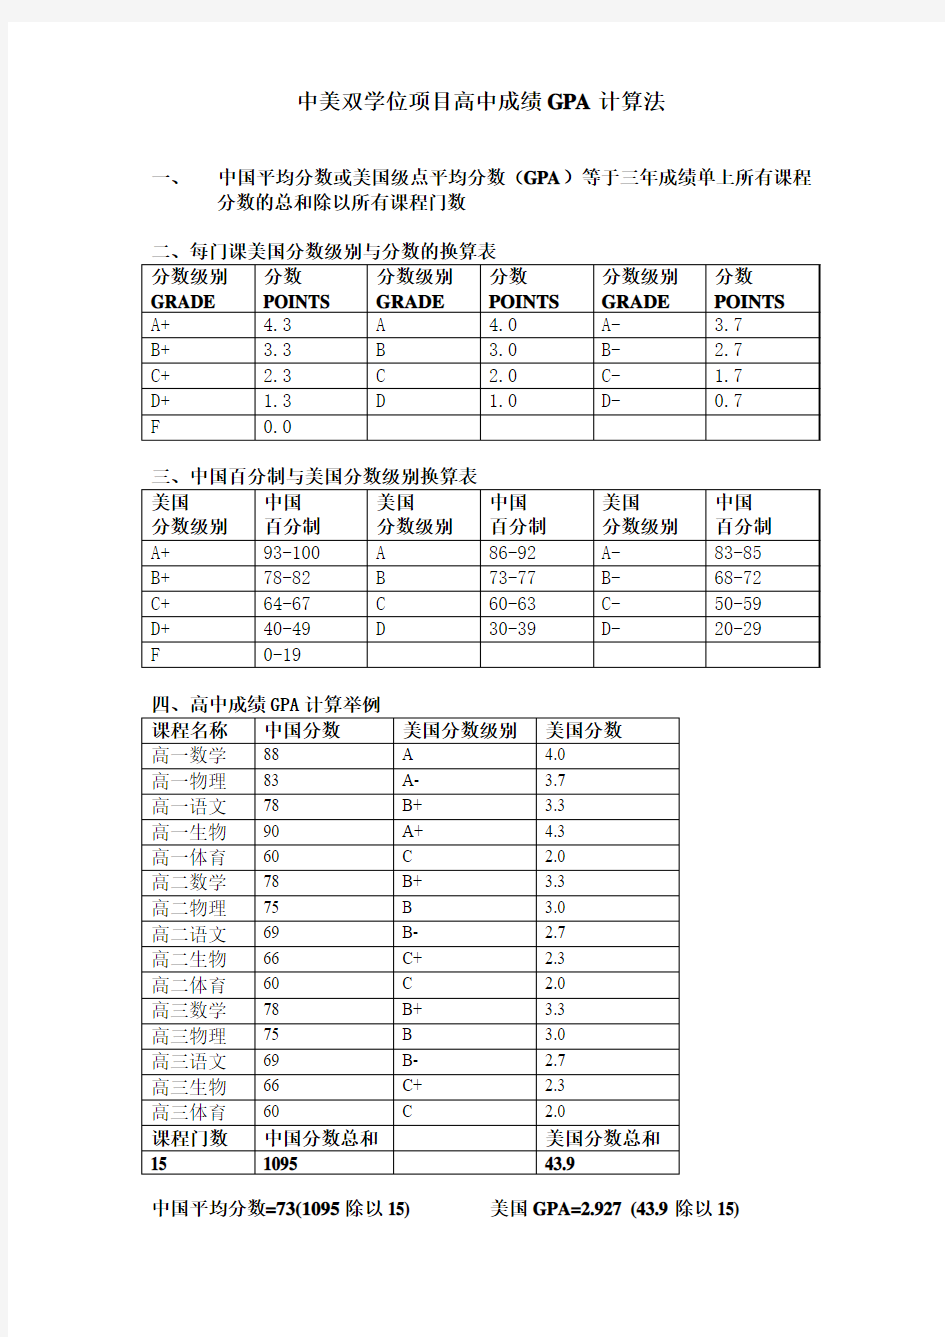 中国高中GPA计算法